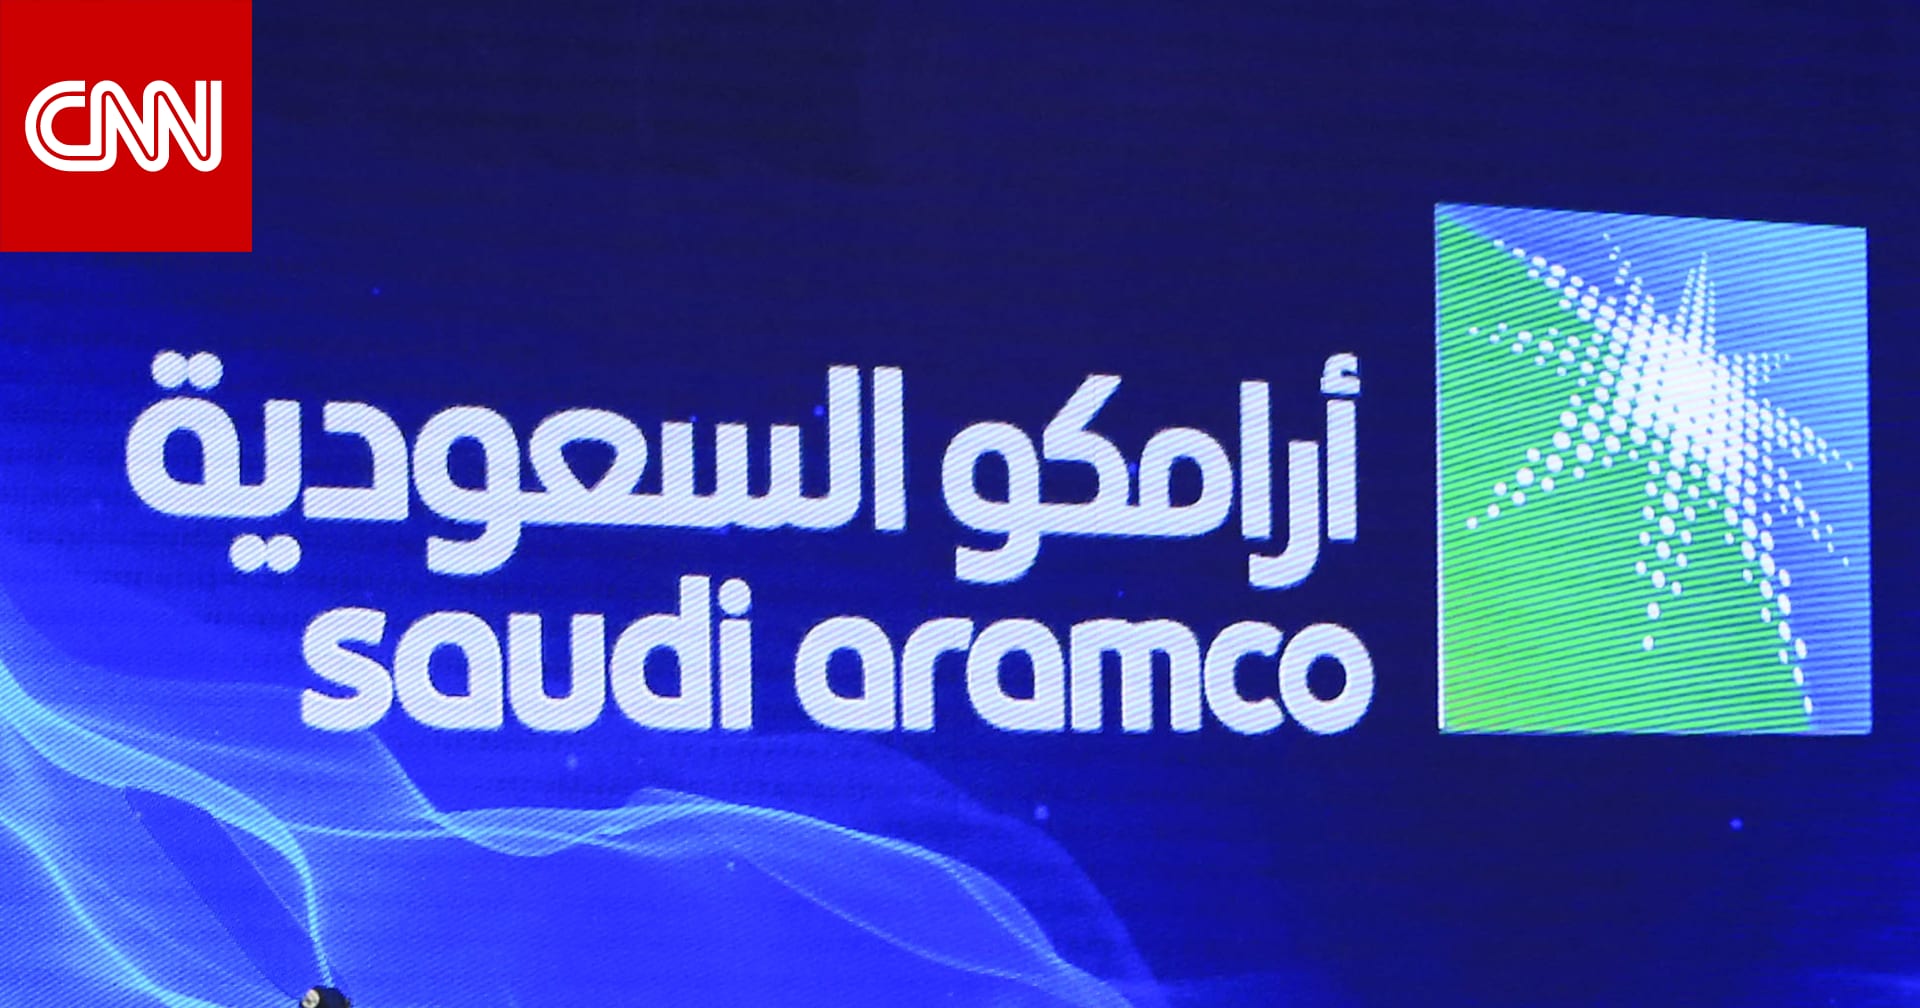 محمد بن سلمان: هناك طروحات لأسهم أرامكو السعودية في السنوات المقبلة